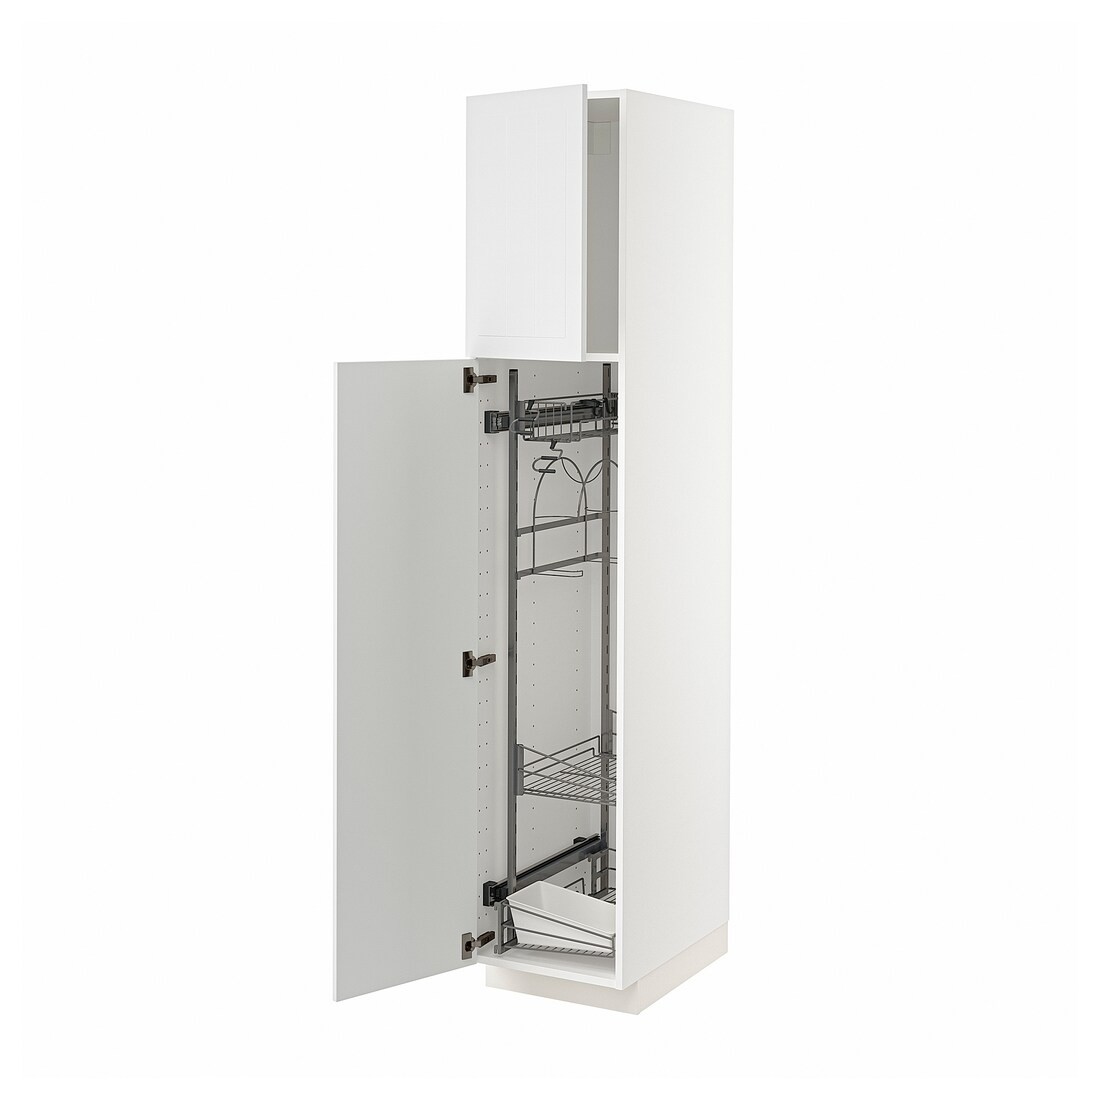 METOD МЕТОД Висока шафа з відділенням для аксесуарів для прибирання, білий / Stensund білий, 40x60x200 см